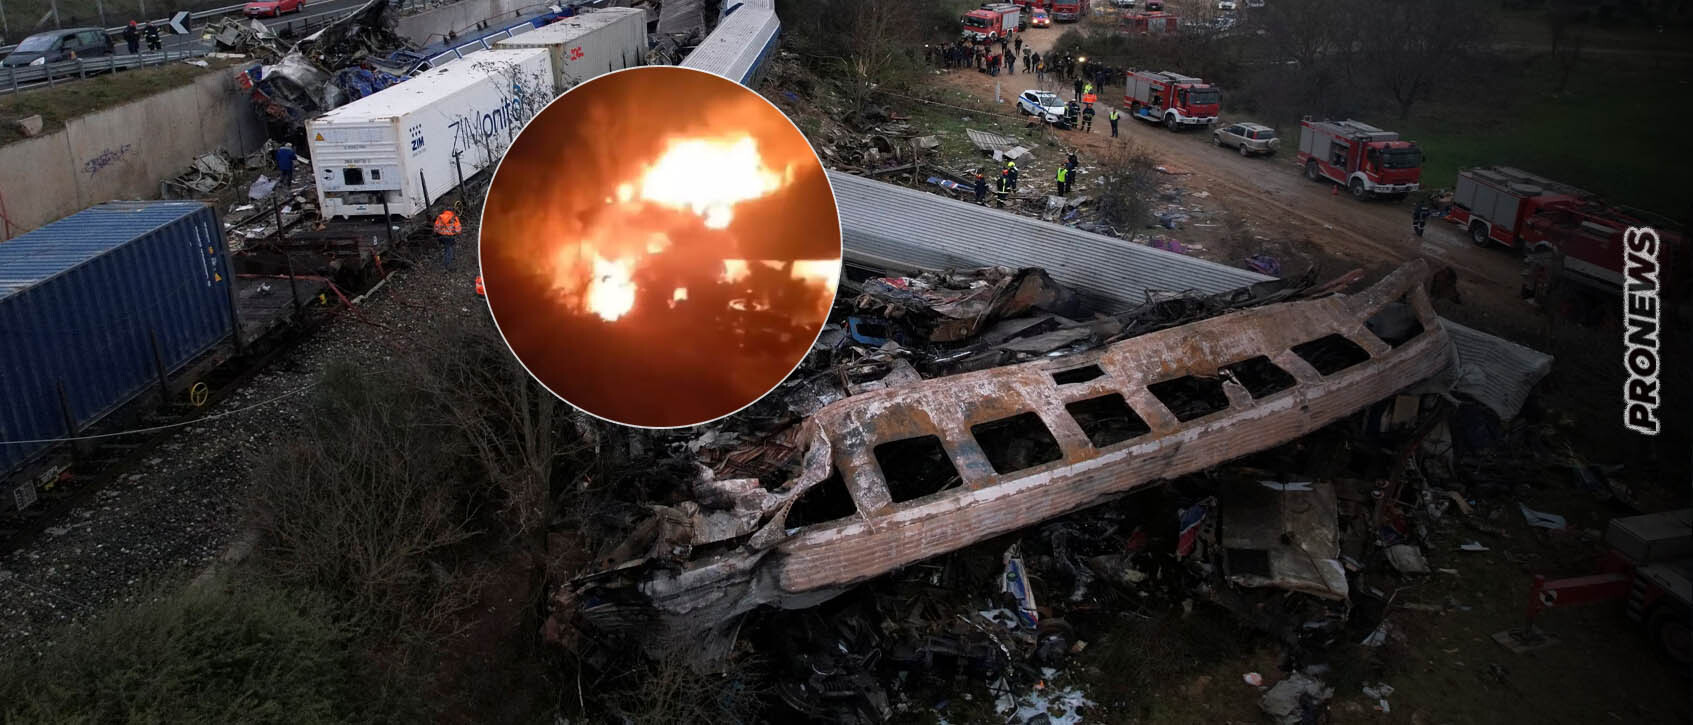 Έγκλημα στα Τέμπη: «Μη φυσιολογική η έκρηξη» λένε οι πραγματογνώμονες των οικογενειών – Άγνωστο τι προκάλεσε το   ανεξήγητο «μανιτάρι» φωτιάς